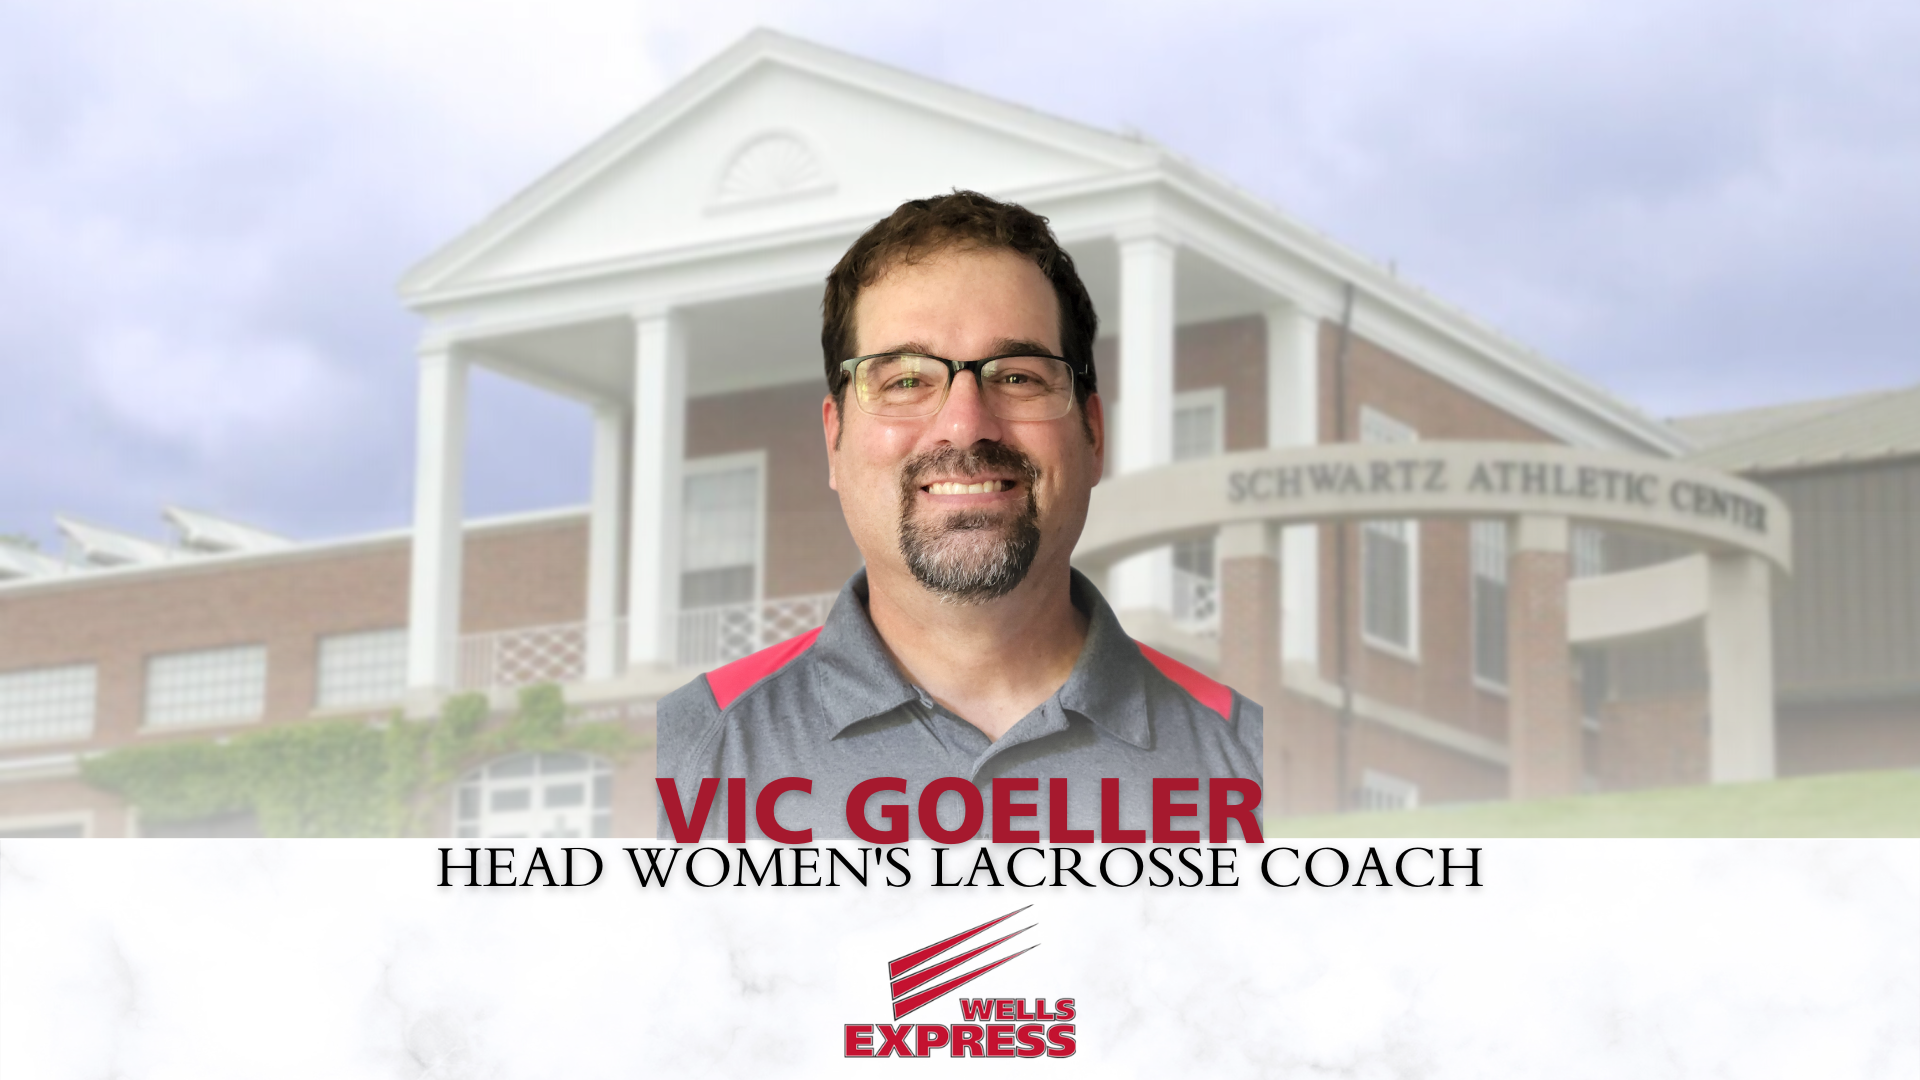 Vic Goeller Named Head Women's Lacrosse Coach